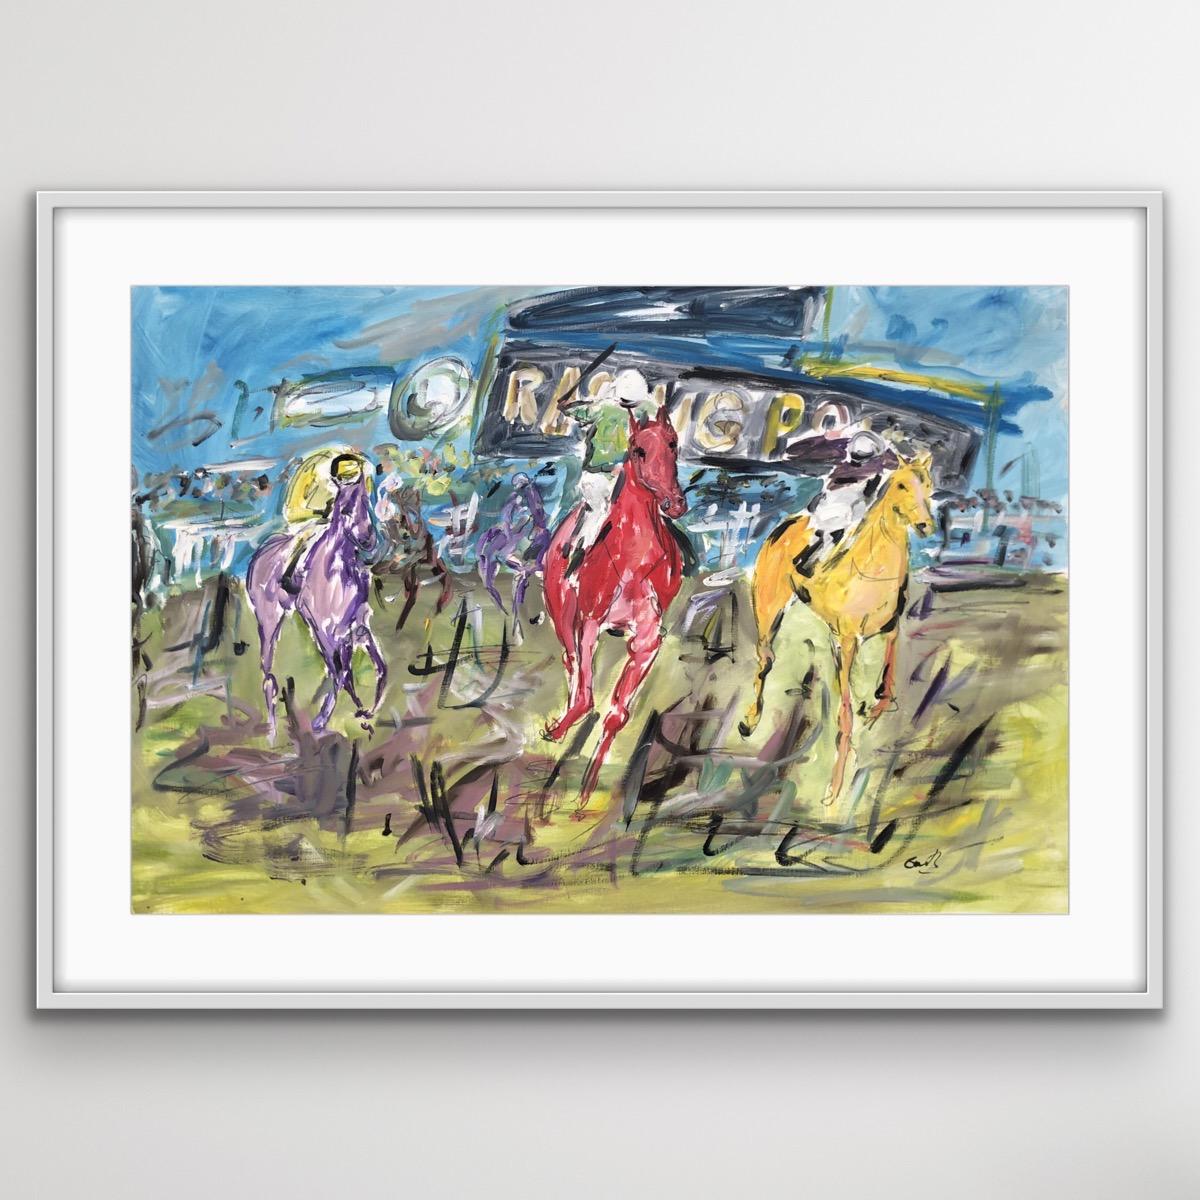 Cheltenham Races est une peinture originale de Garth Bayley basée sur les courses de Cheltenham. Chevaux, courses de chevaux, sport,
Le format 60 x 90 cm est le format de l'image avec un supplément pour l'encadrement. La peinture est réalisée sur du